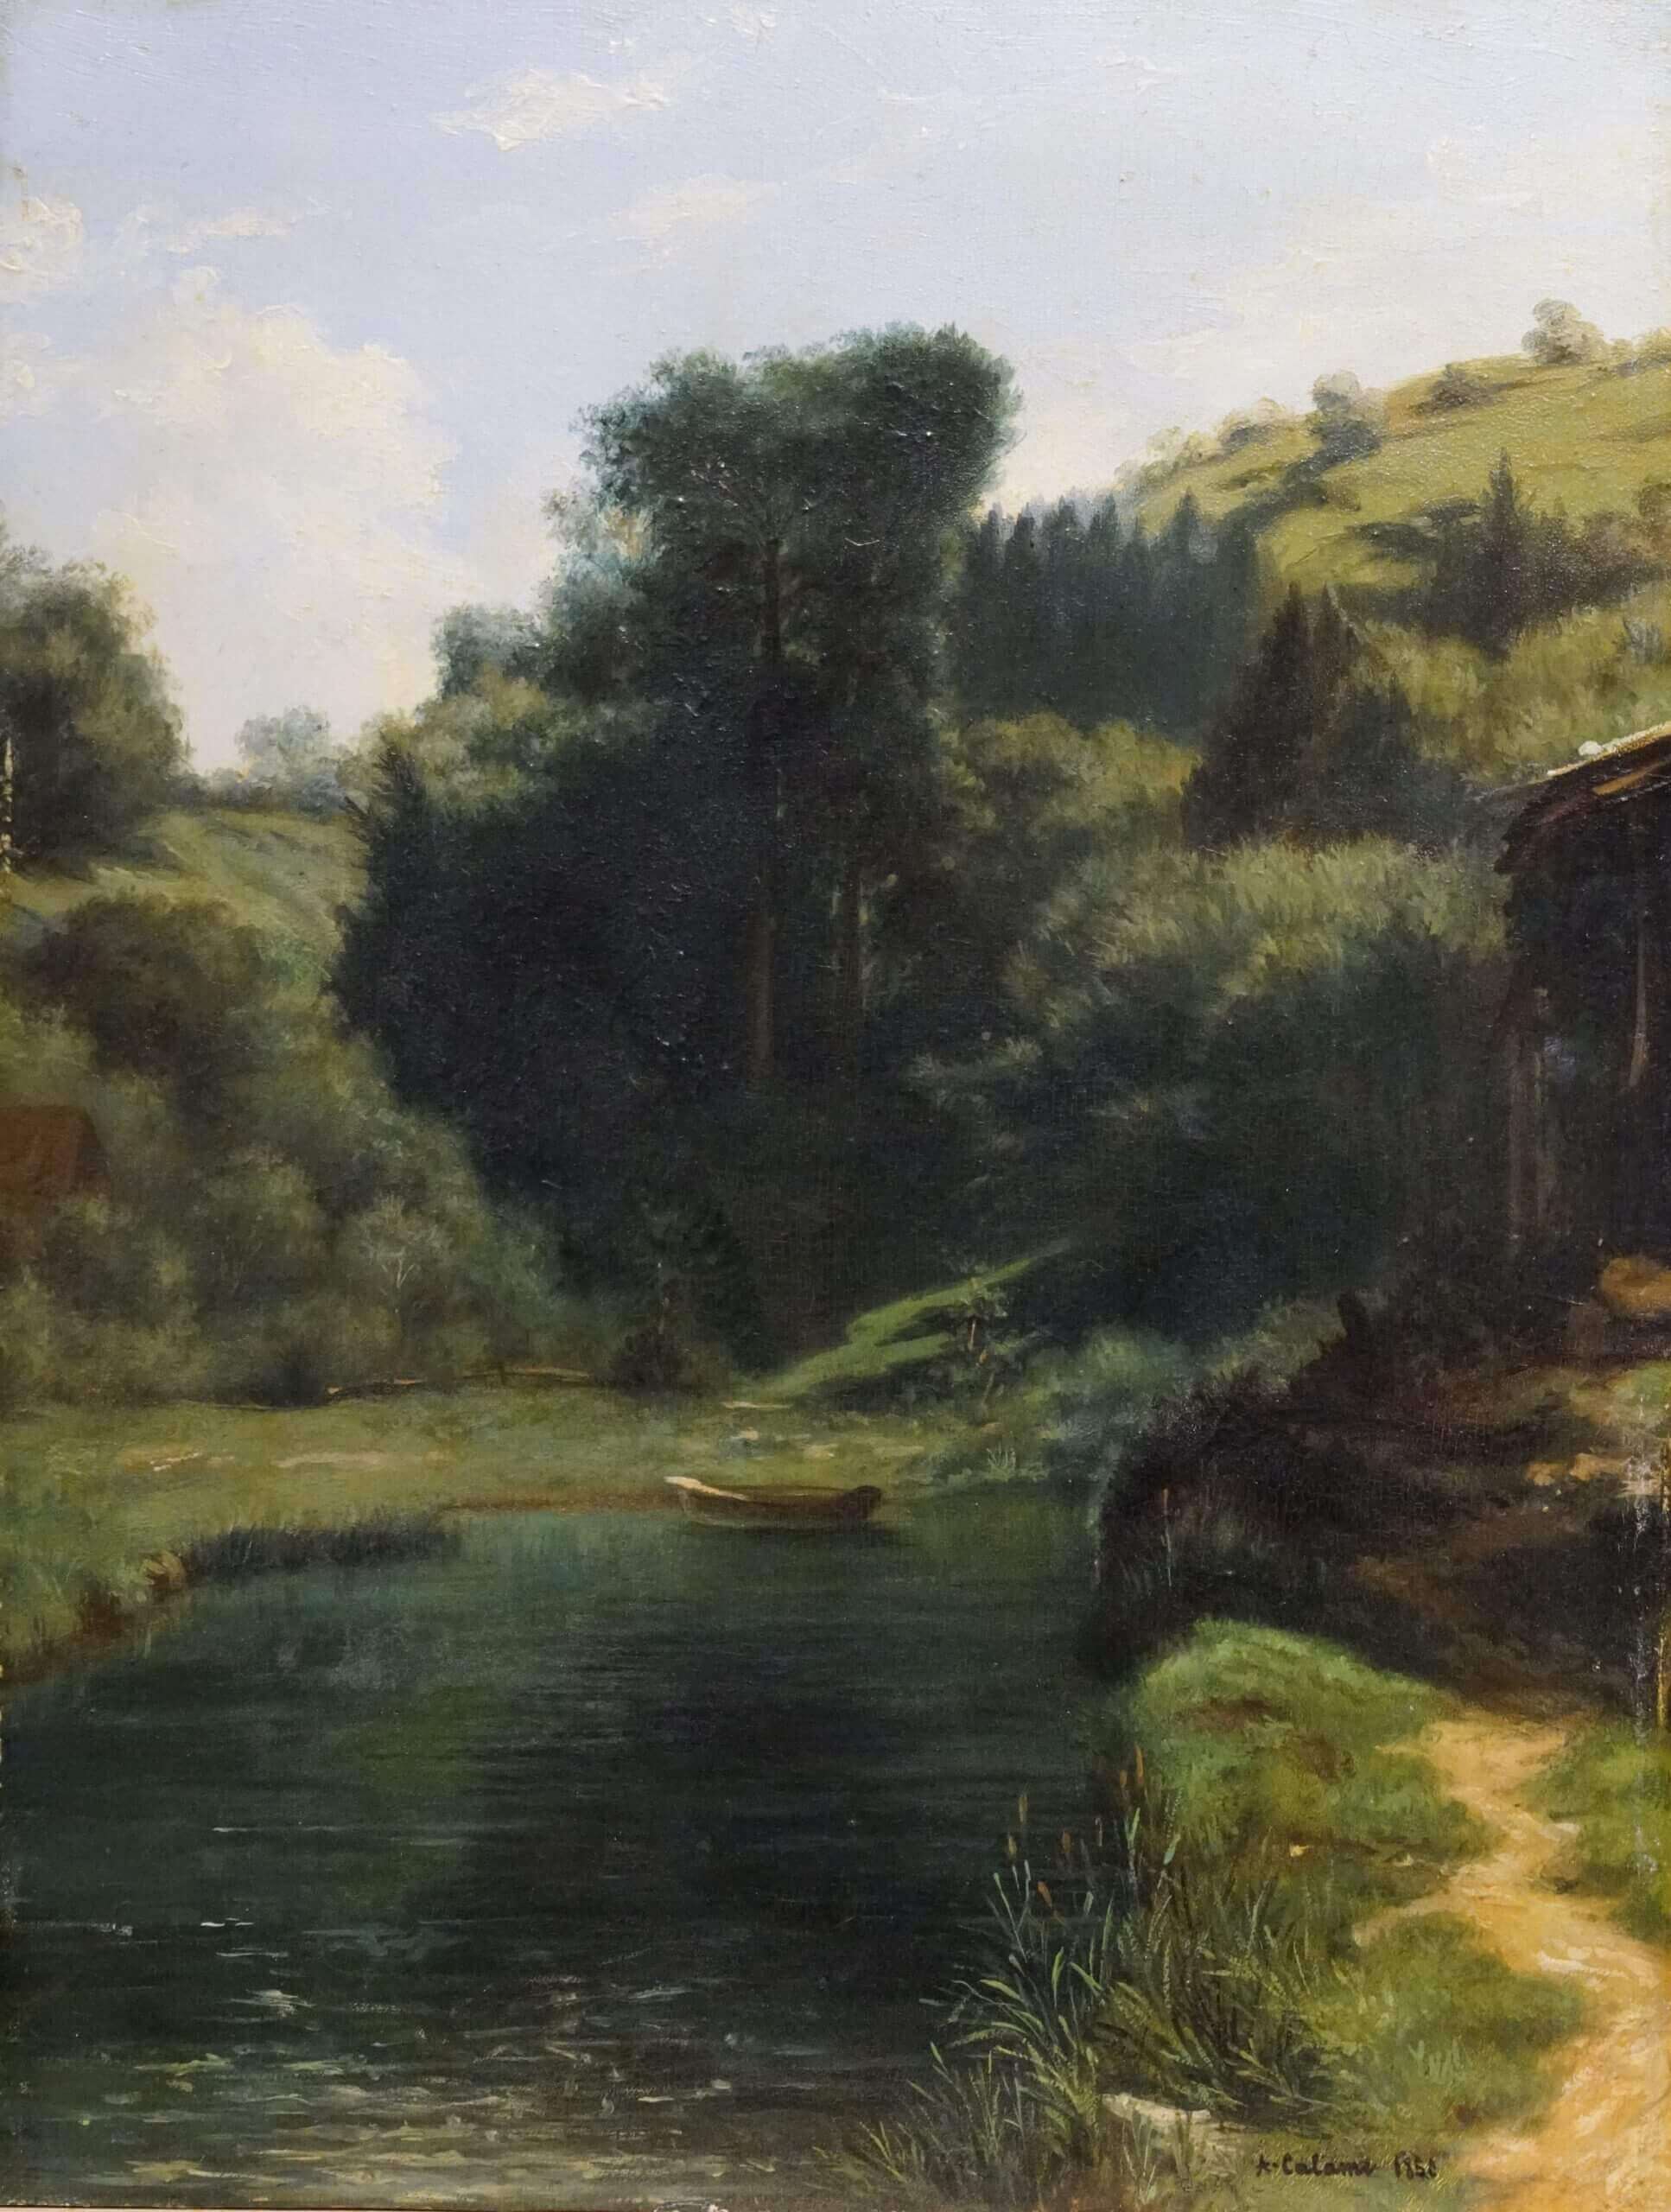 Gemälde von Alexandre Calame mit einer Landschaft bei Brunnen